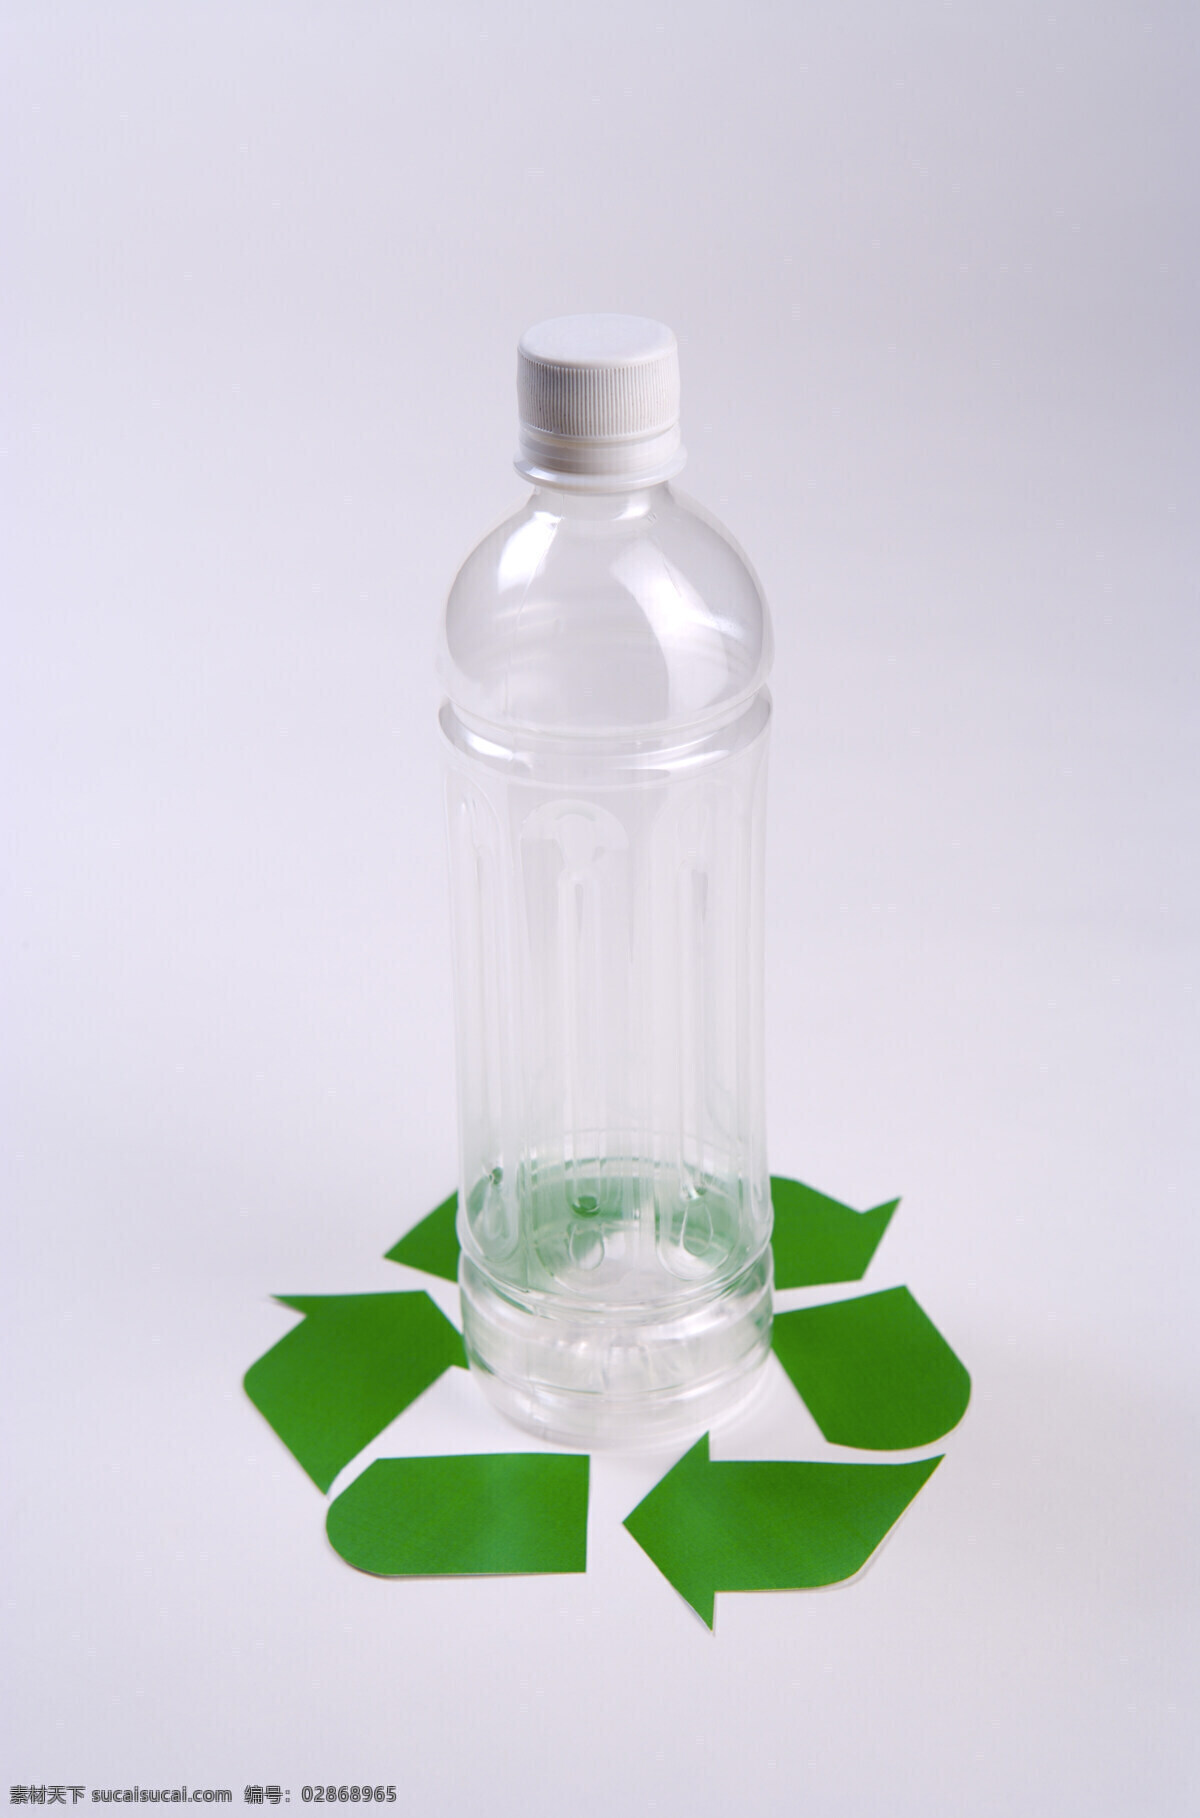 塑料瓶 回收 利用 公益 广告 垃圾 环保 公益广告 回收利用 可利用资源 高清图片 其他类别 生活百科